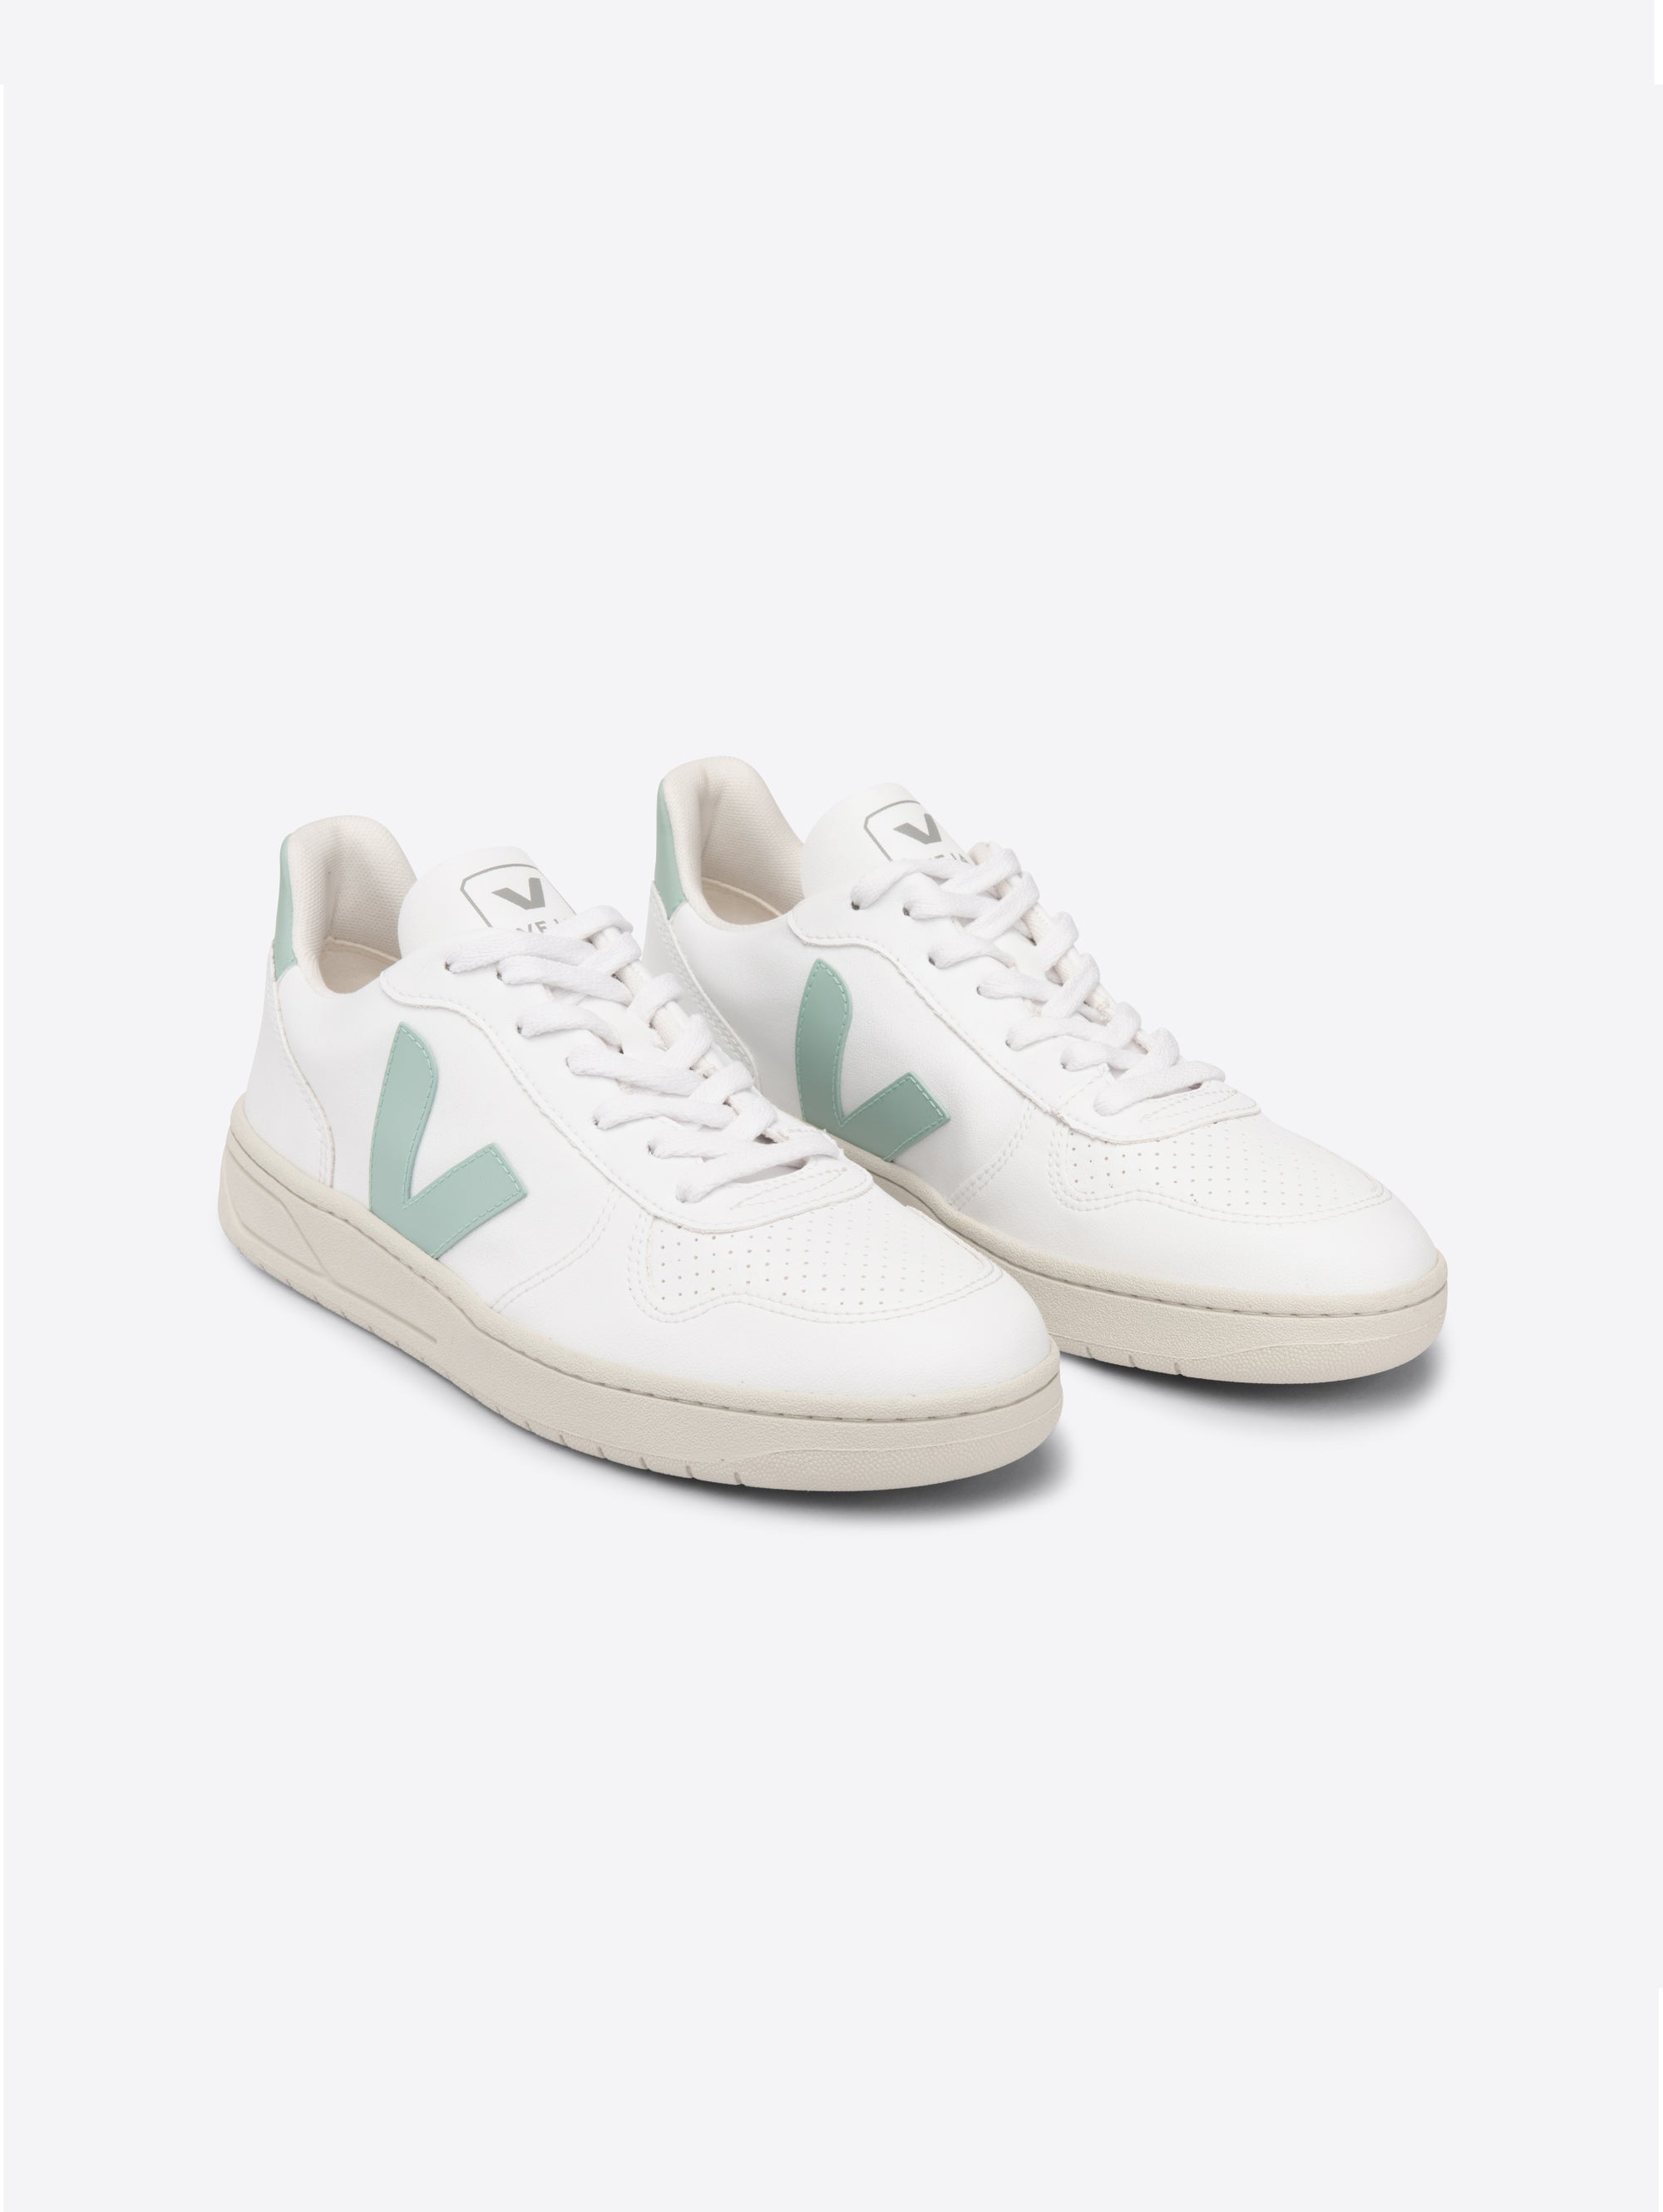 Weiße/Matcha-Sneaker aus veganem Leder